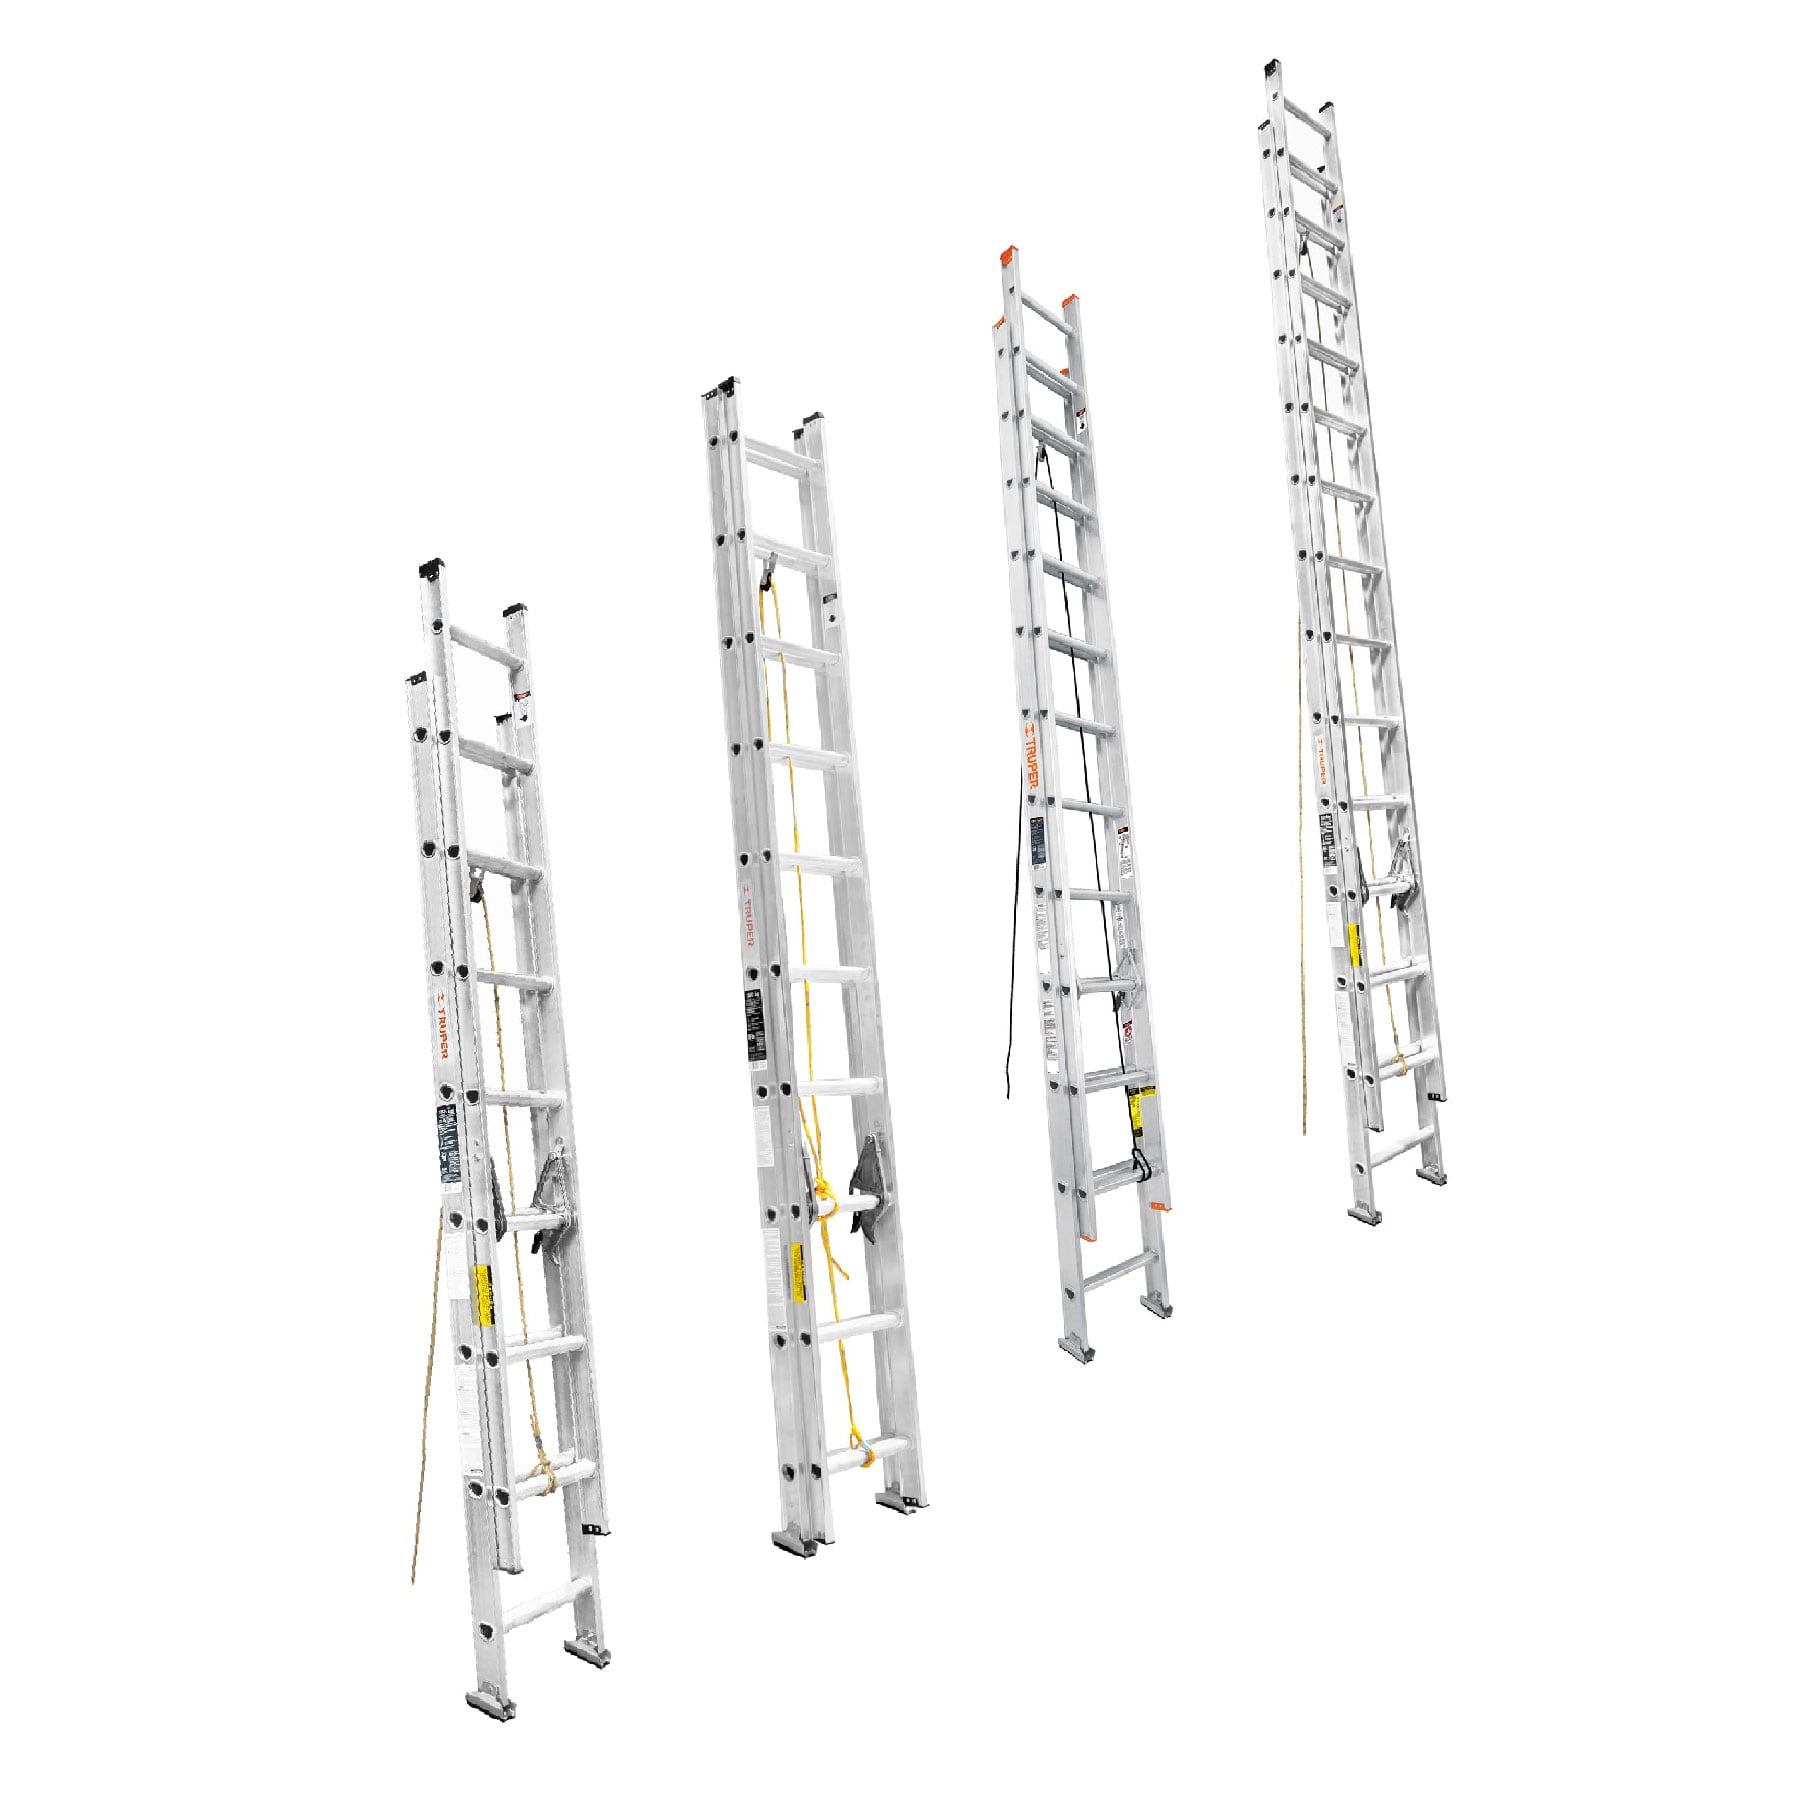 Escaleras de aluminio: características, ventajas y tipos – KTL ESCALERAS